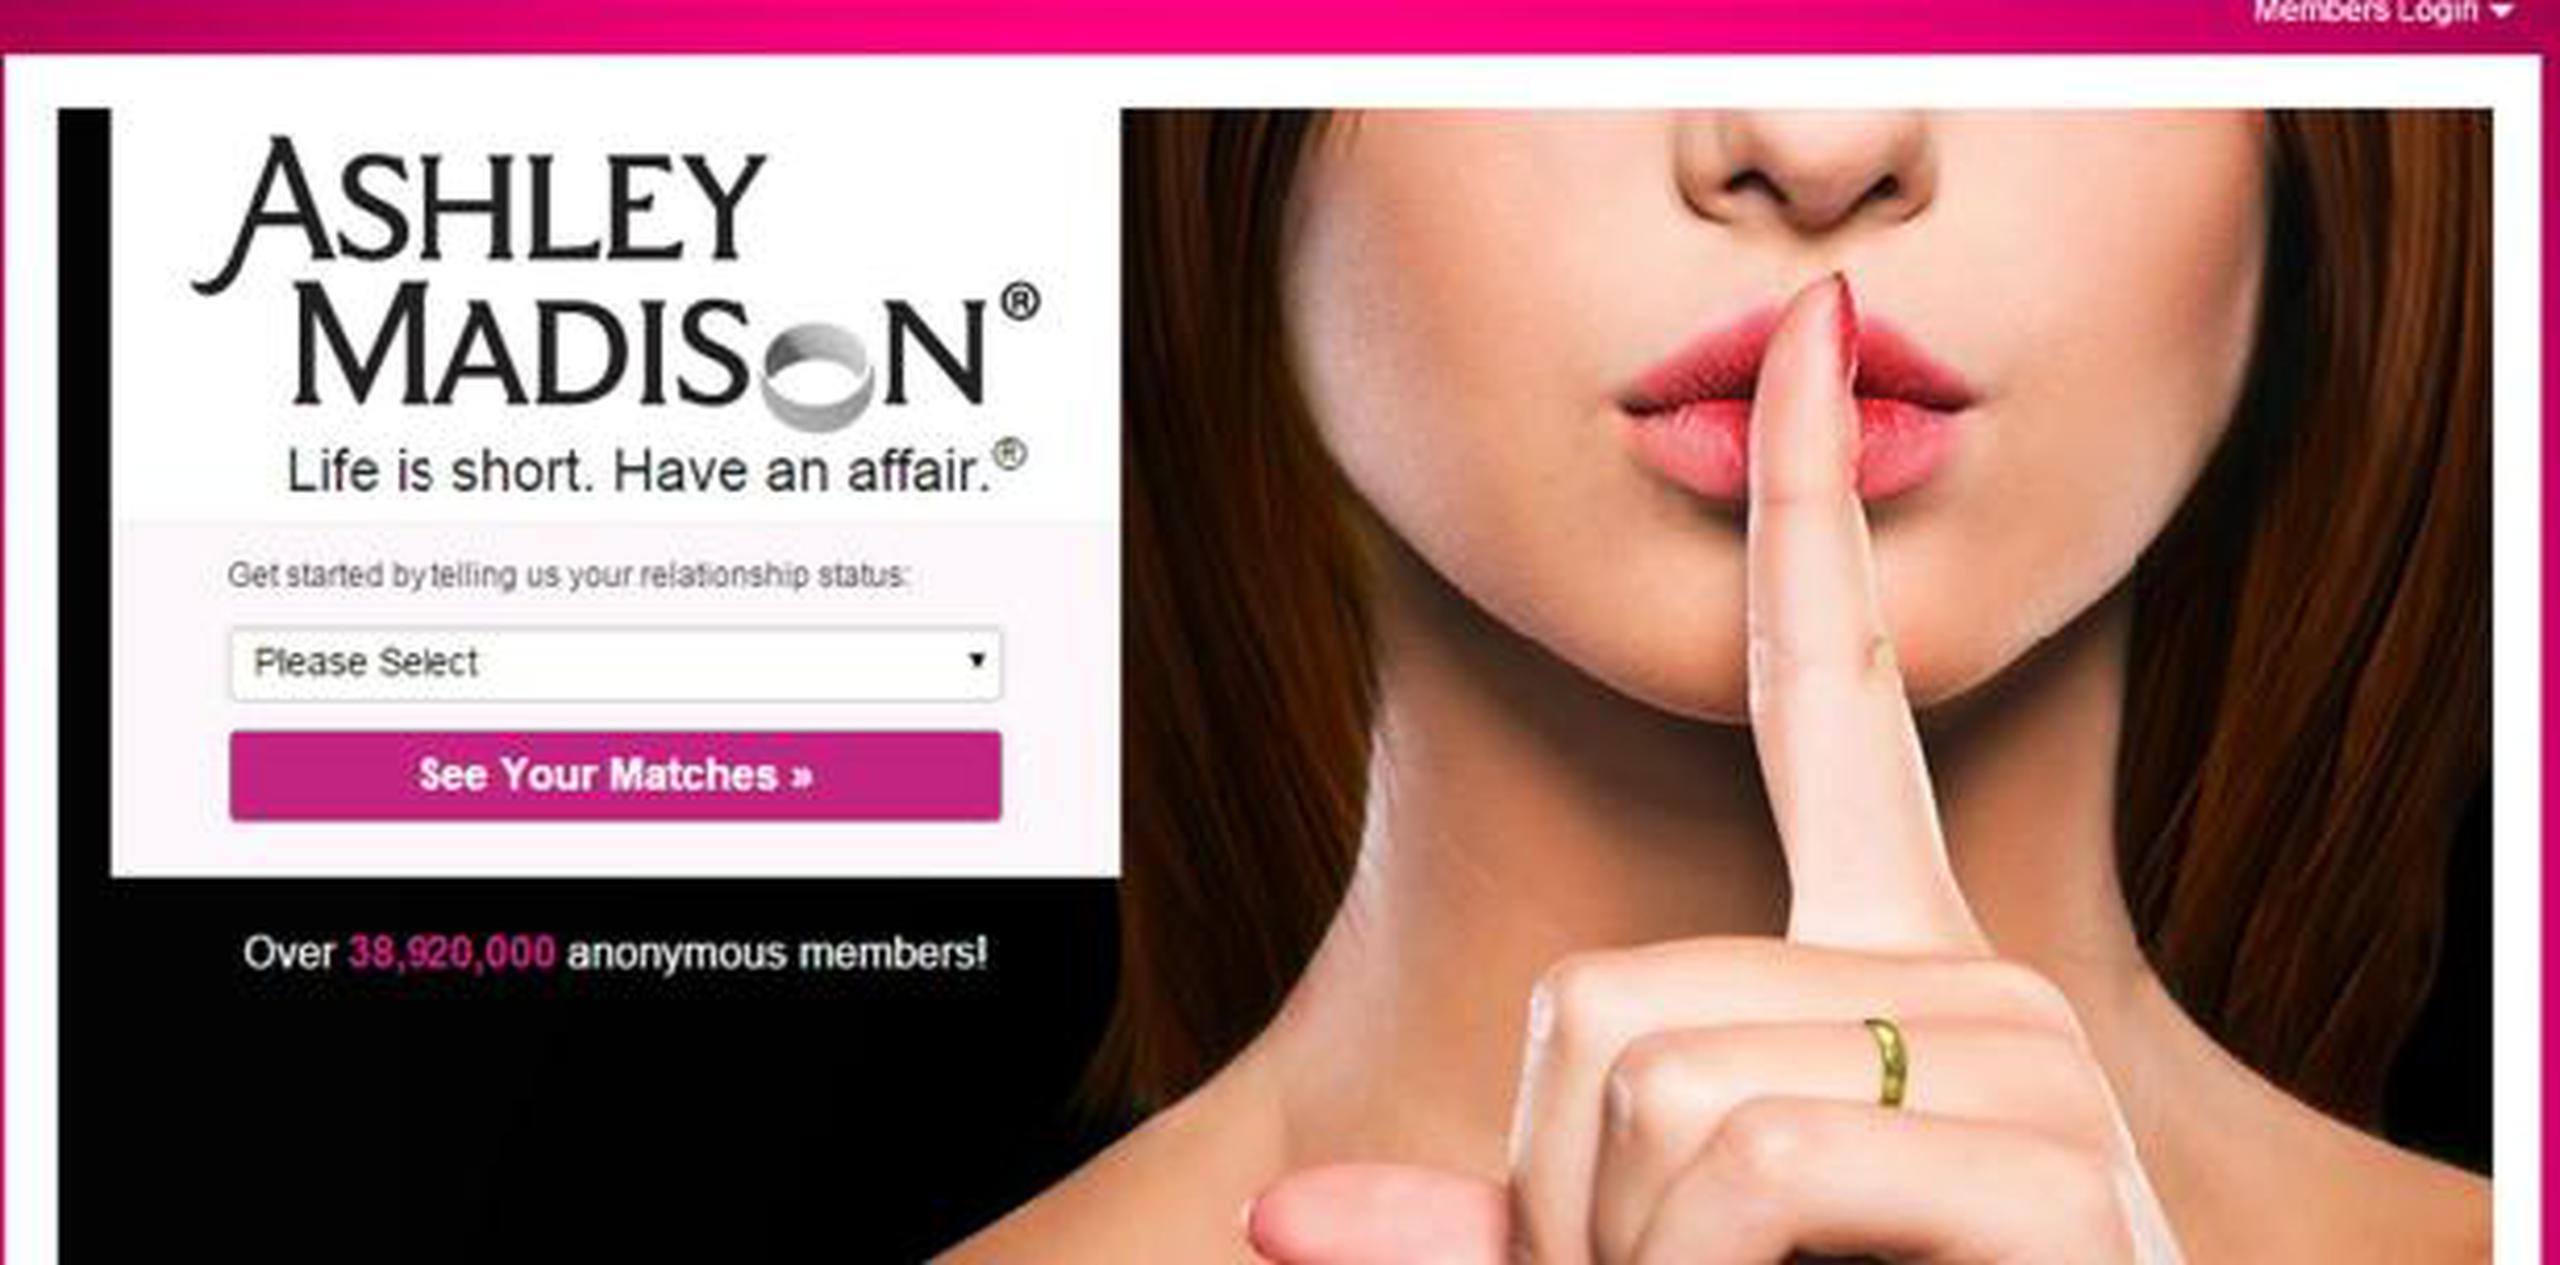 Esta semana, hackers difundieron datos detallados de millones de personas registradas en Ashley Madison, portal que promueve como un sitio que facilita las relaciones extramaritales.